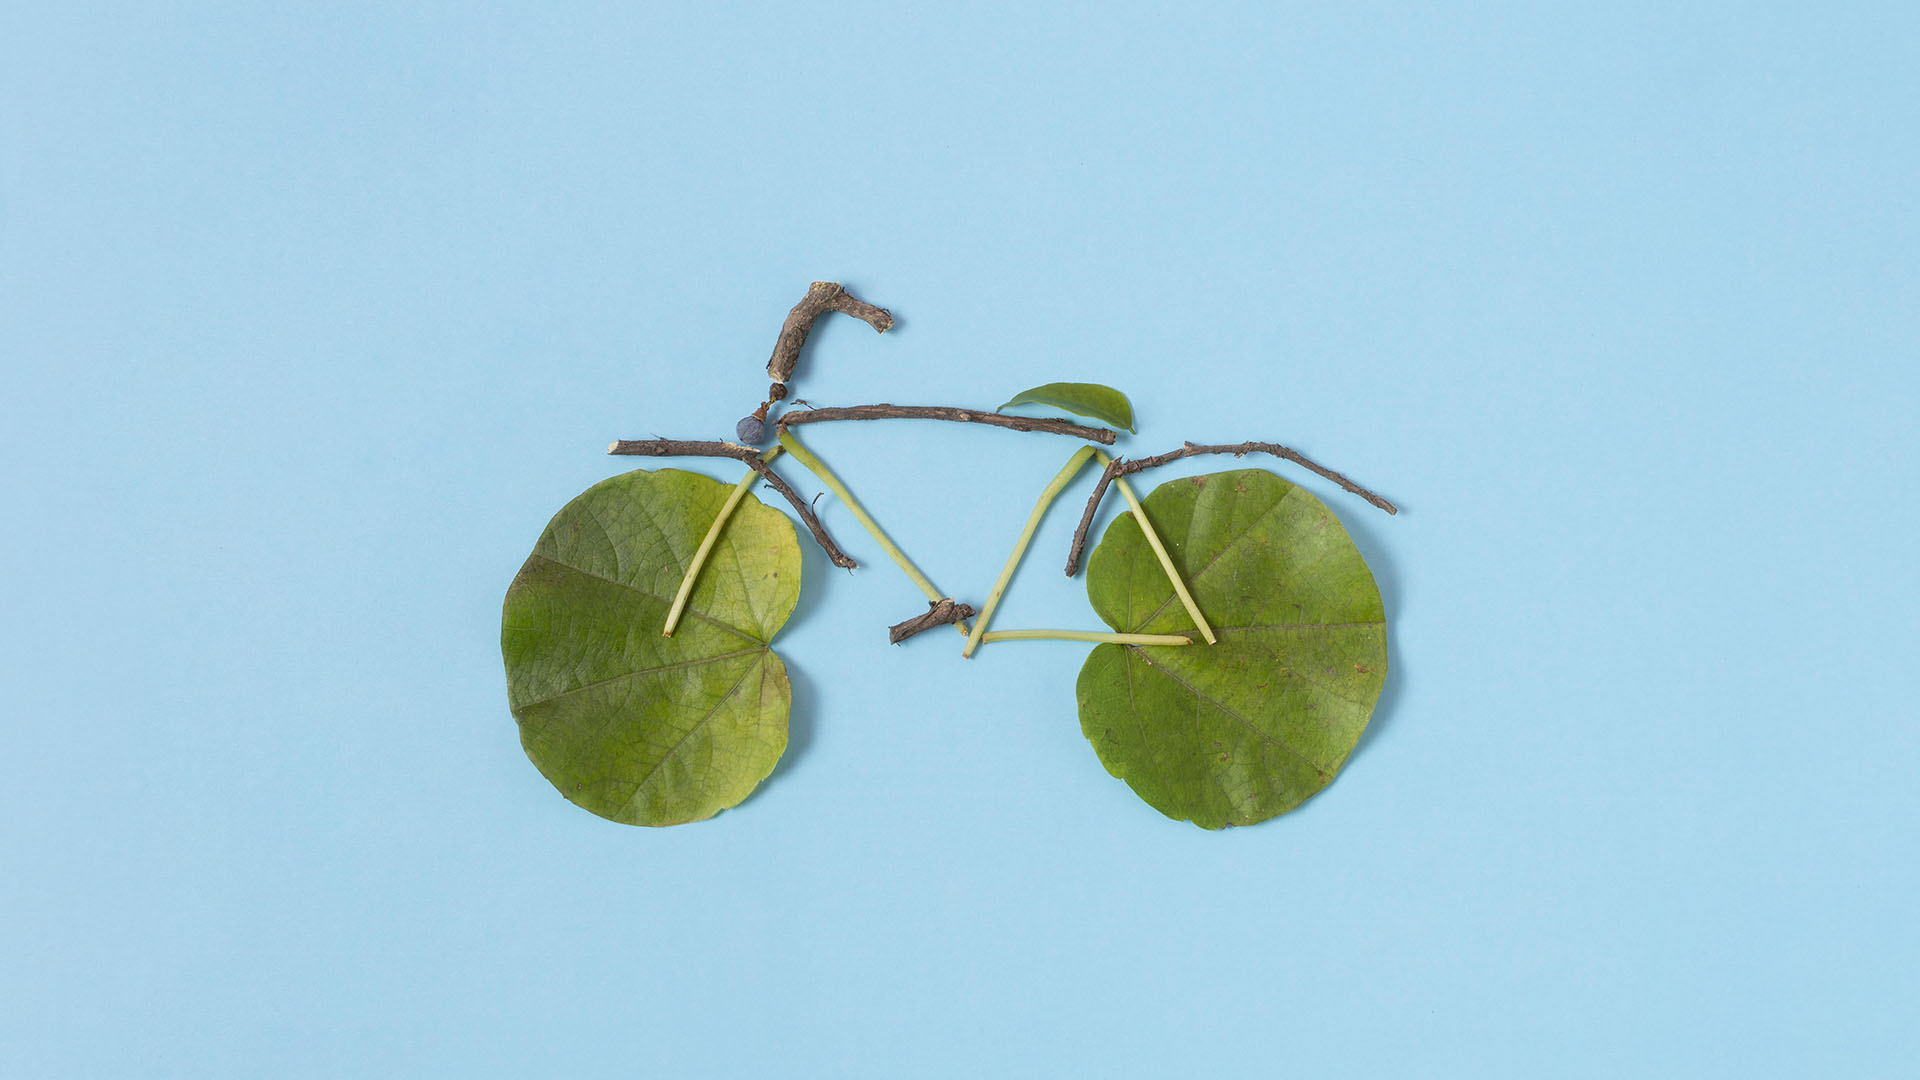 Fahrrad aus Naturmaterialien als Zeichen für Nachhaltigkeit